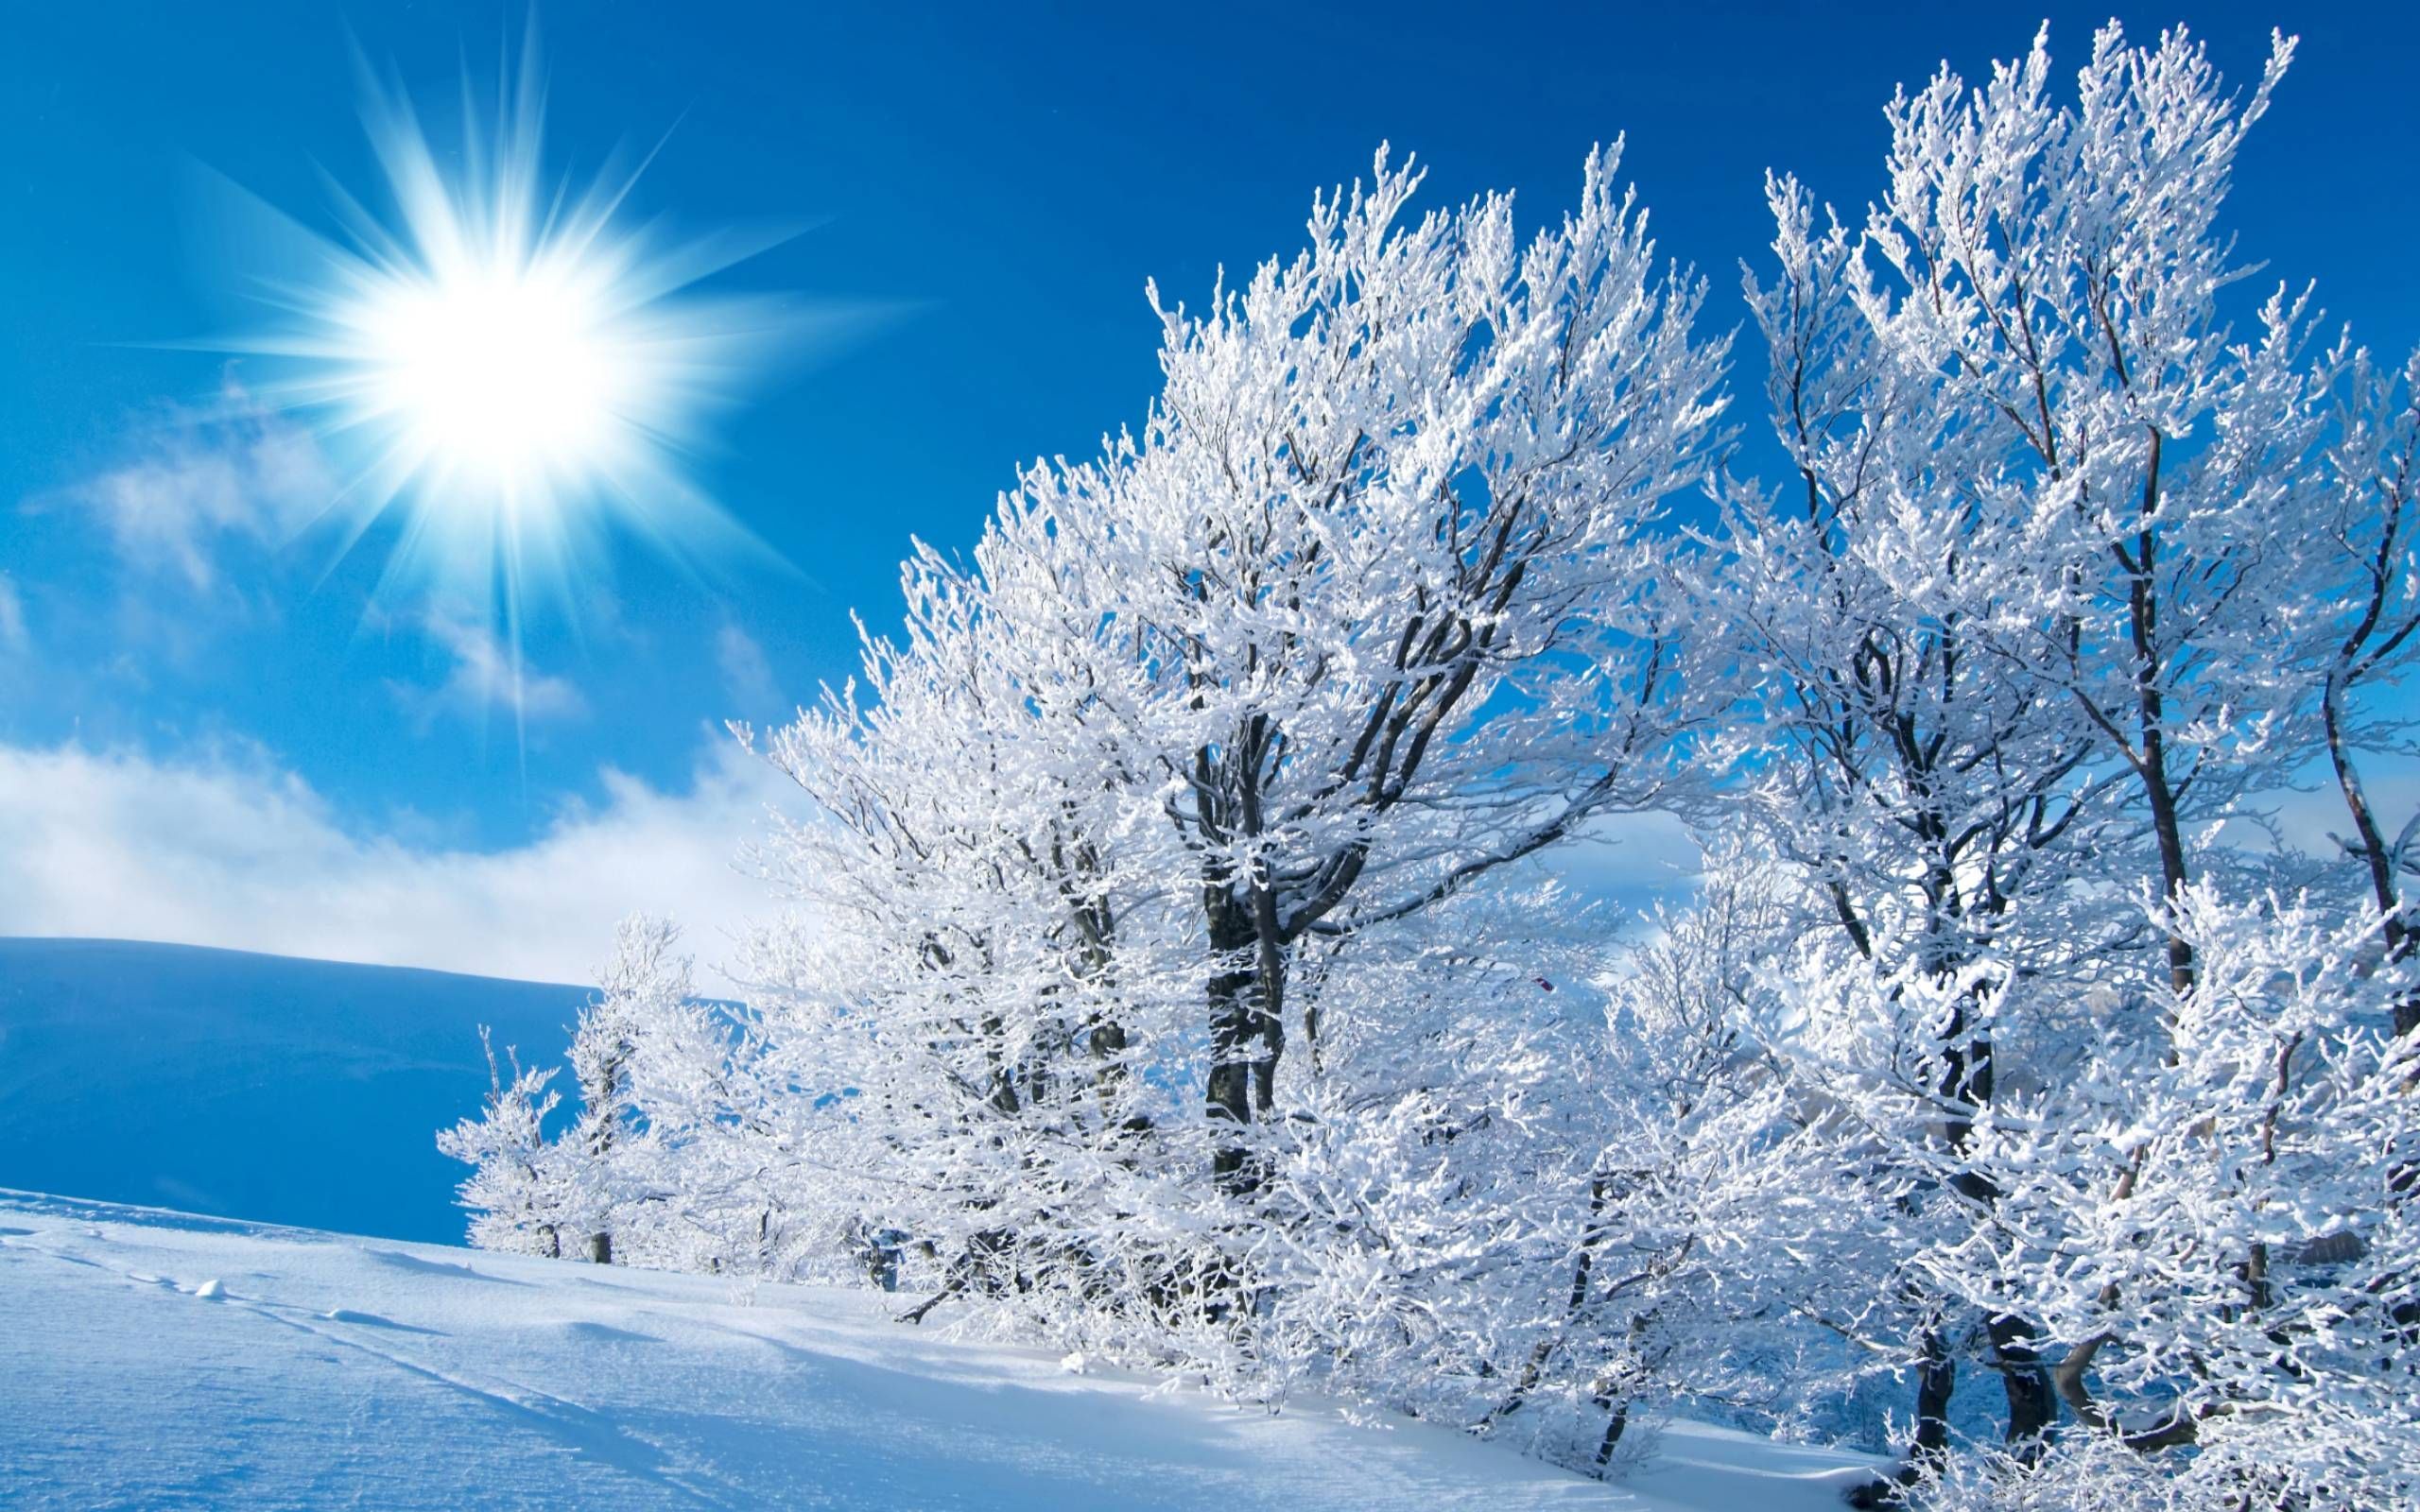 Winter Nature Wallpapers HD Resolución | Iarna en 2019 | Invierno